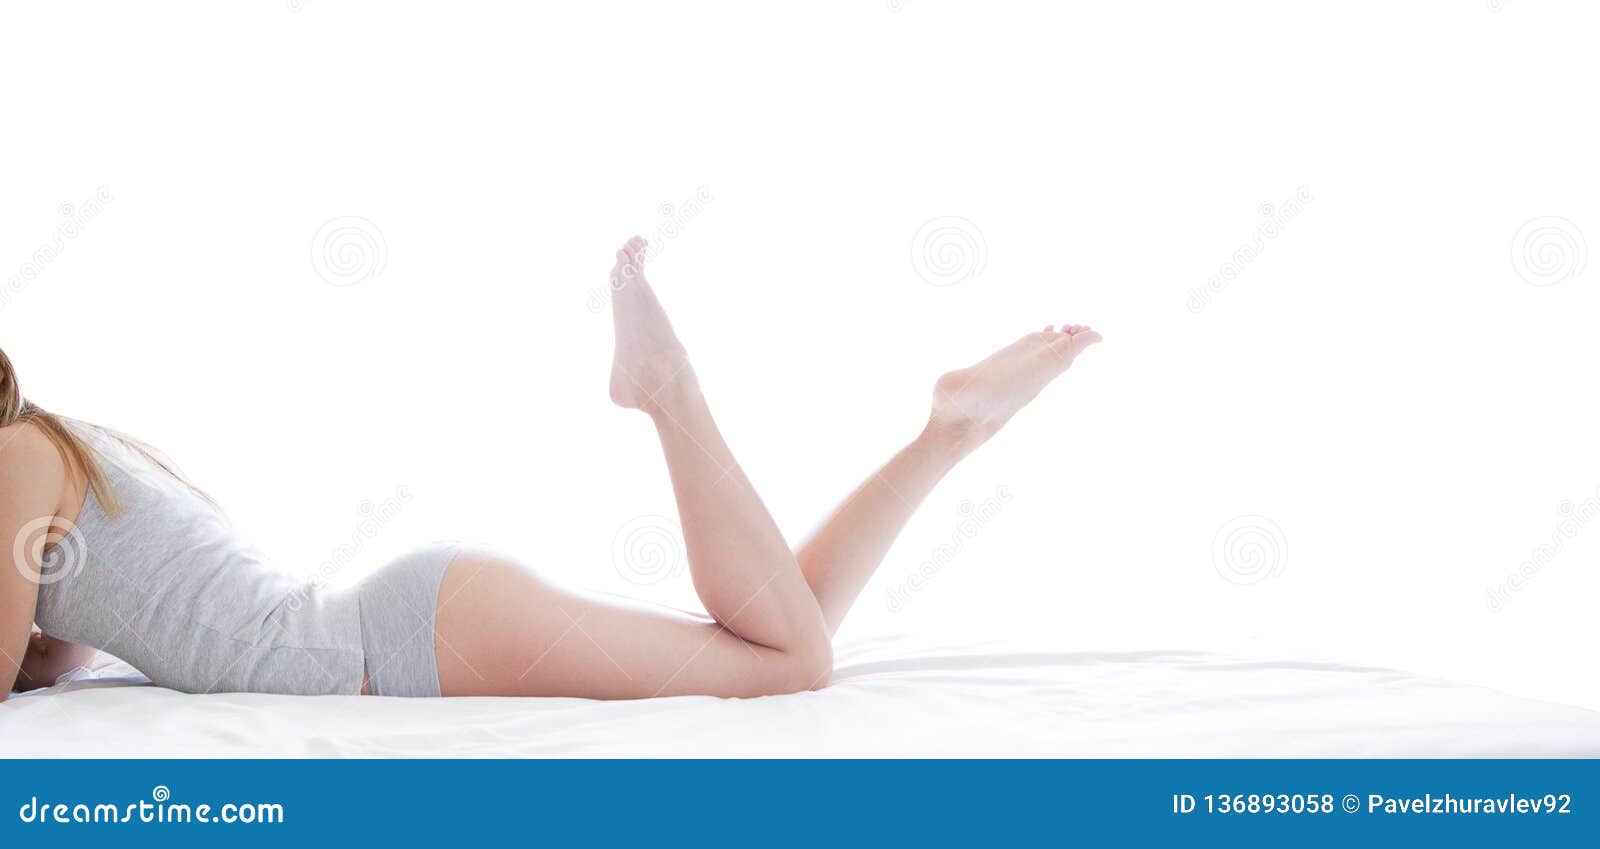 壁纸 : 模型, 在床上, 室内妇女, 黑发, 亚洲人, 躺在背上, 服饰, 护士, 卧室, 色情艺术 5472x3648 - Boczol ...